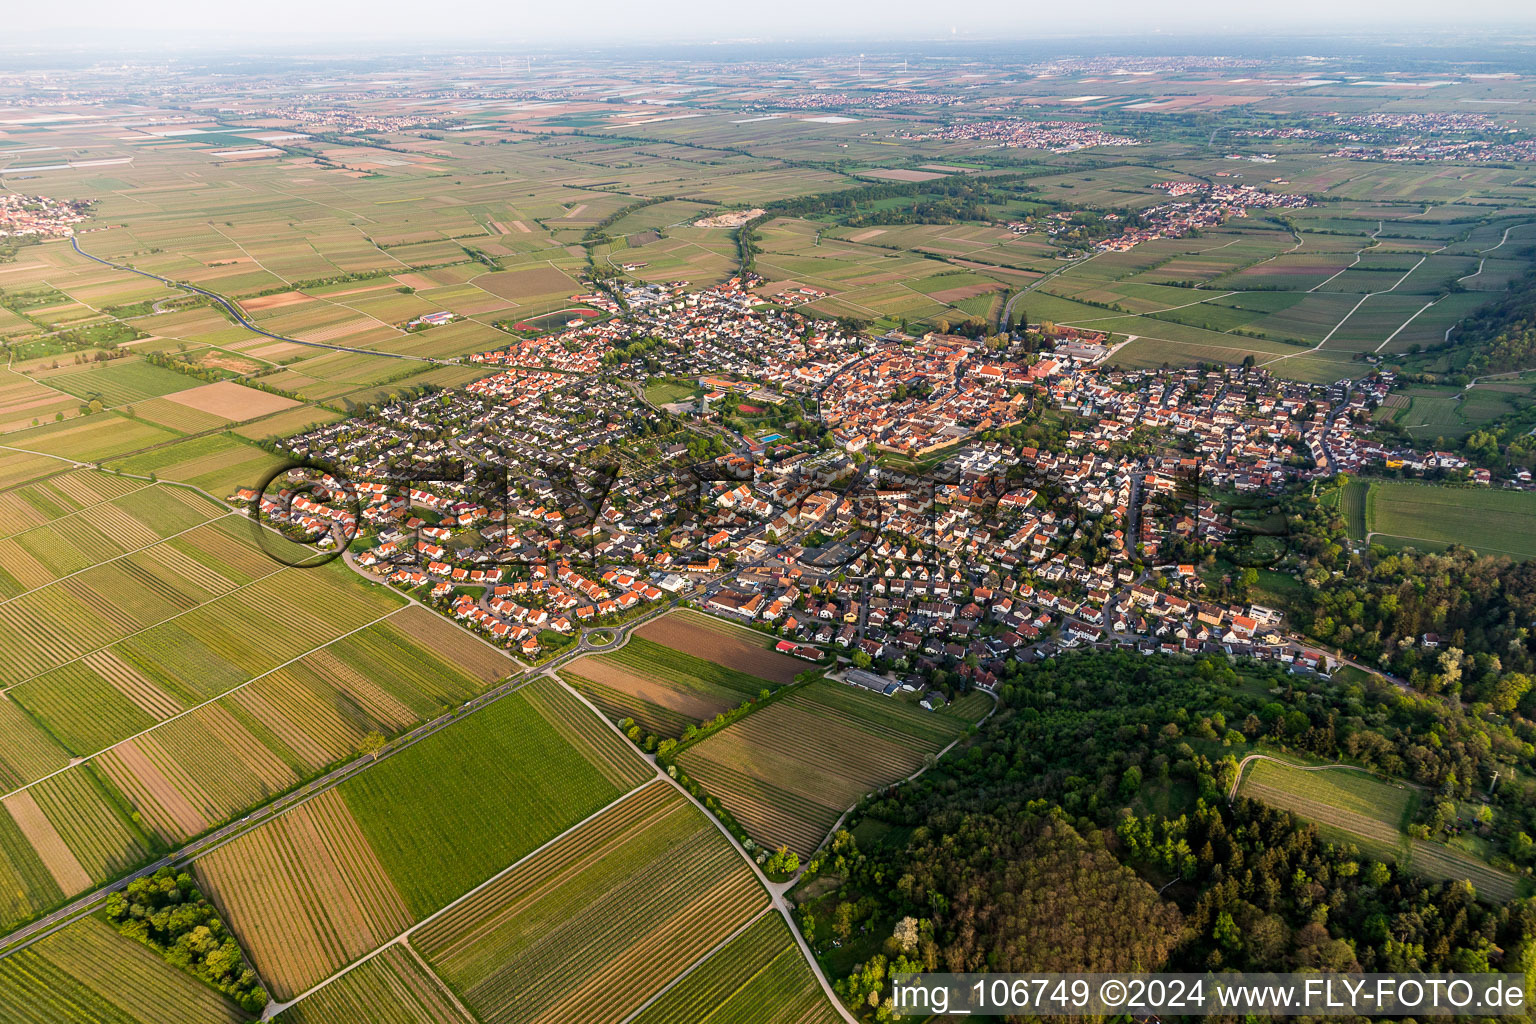 Luftbild von Ortsansicht am Rande von landwirtschaftlichen Feldern und Nutzflächen in Wachenheim an der Weinstraße im Bundesland Rheinland-Pfalz, Deutschland